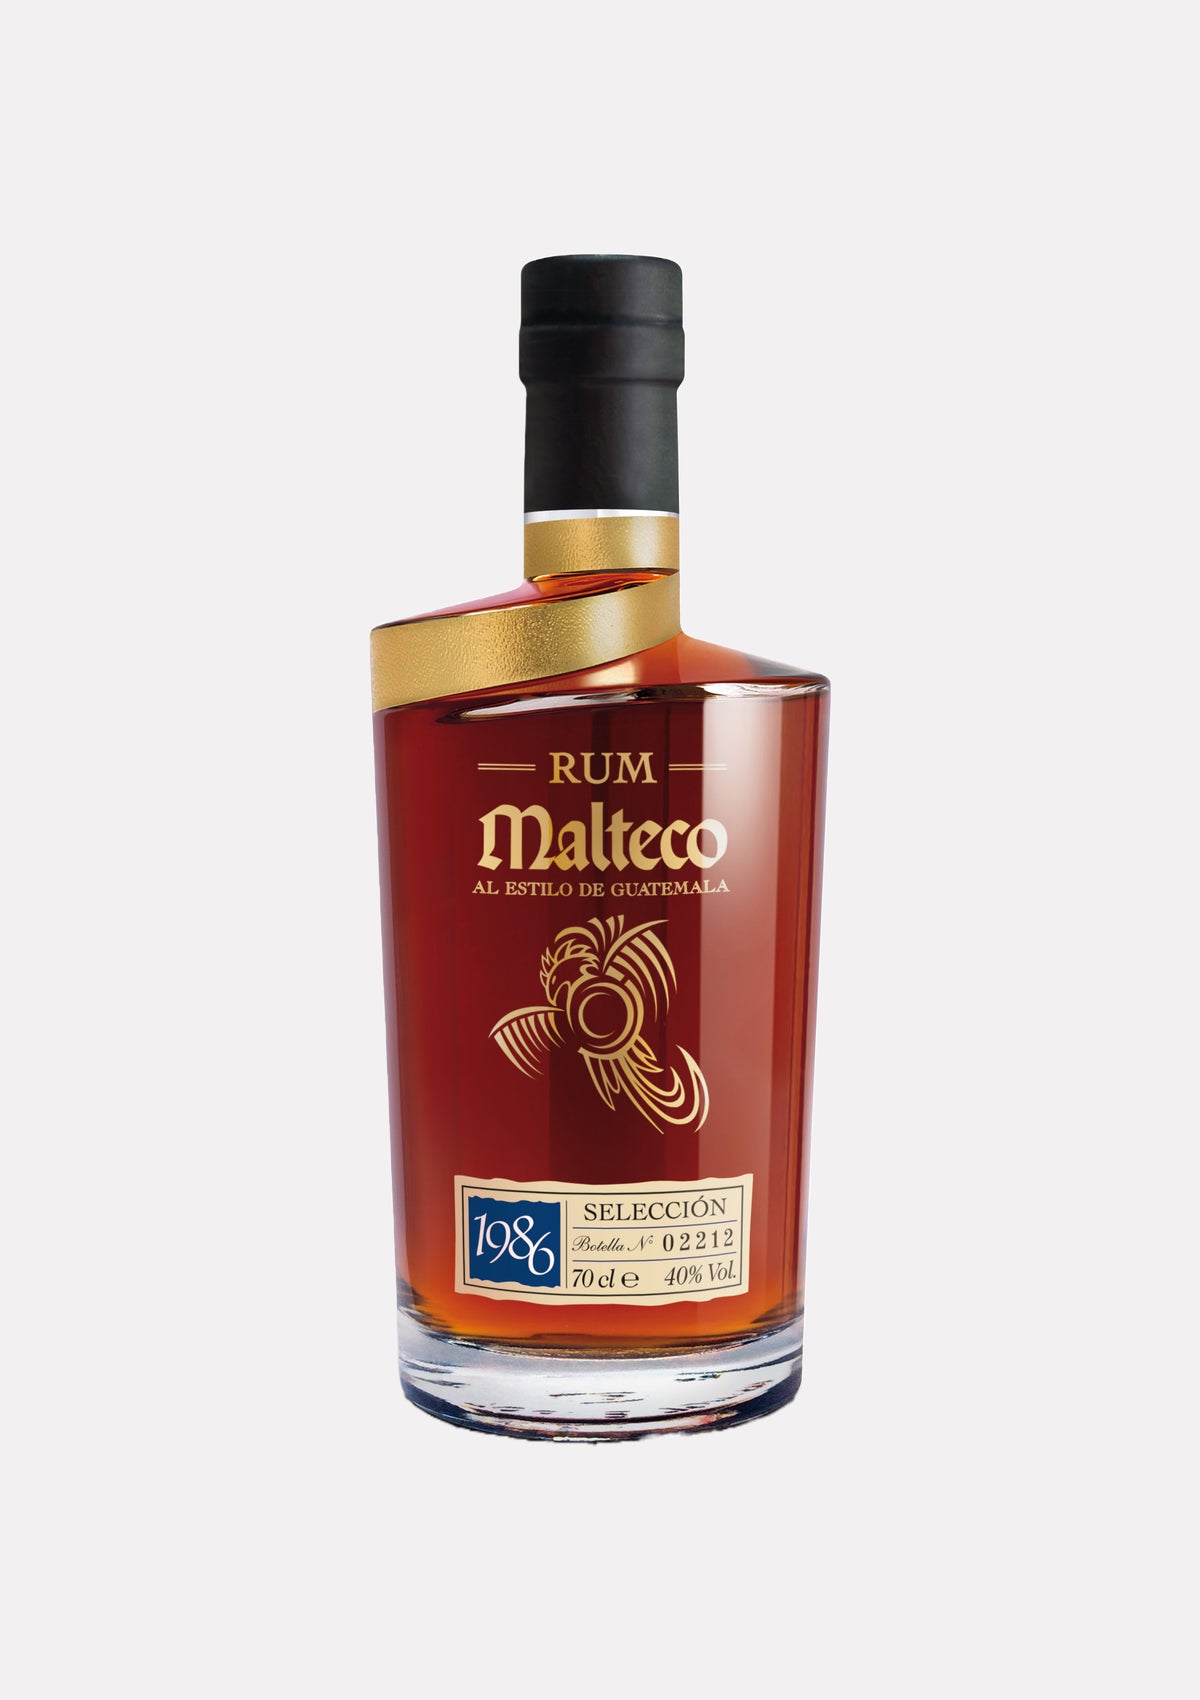 Rum Malteco 1986